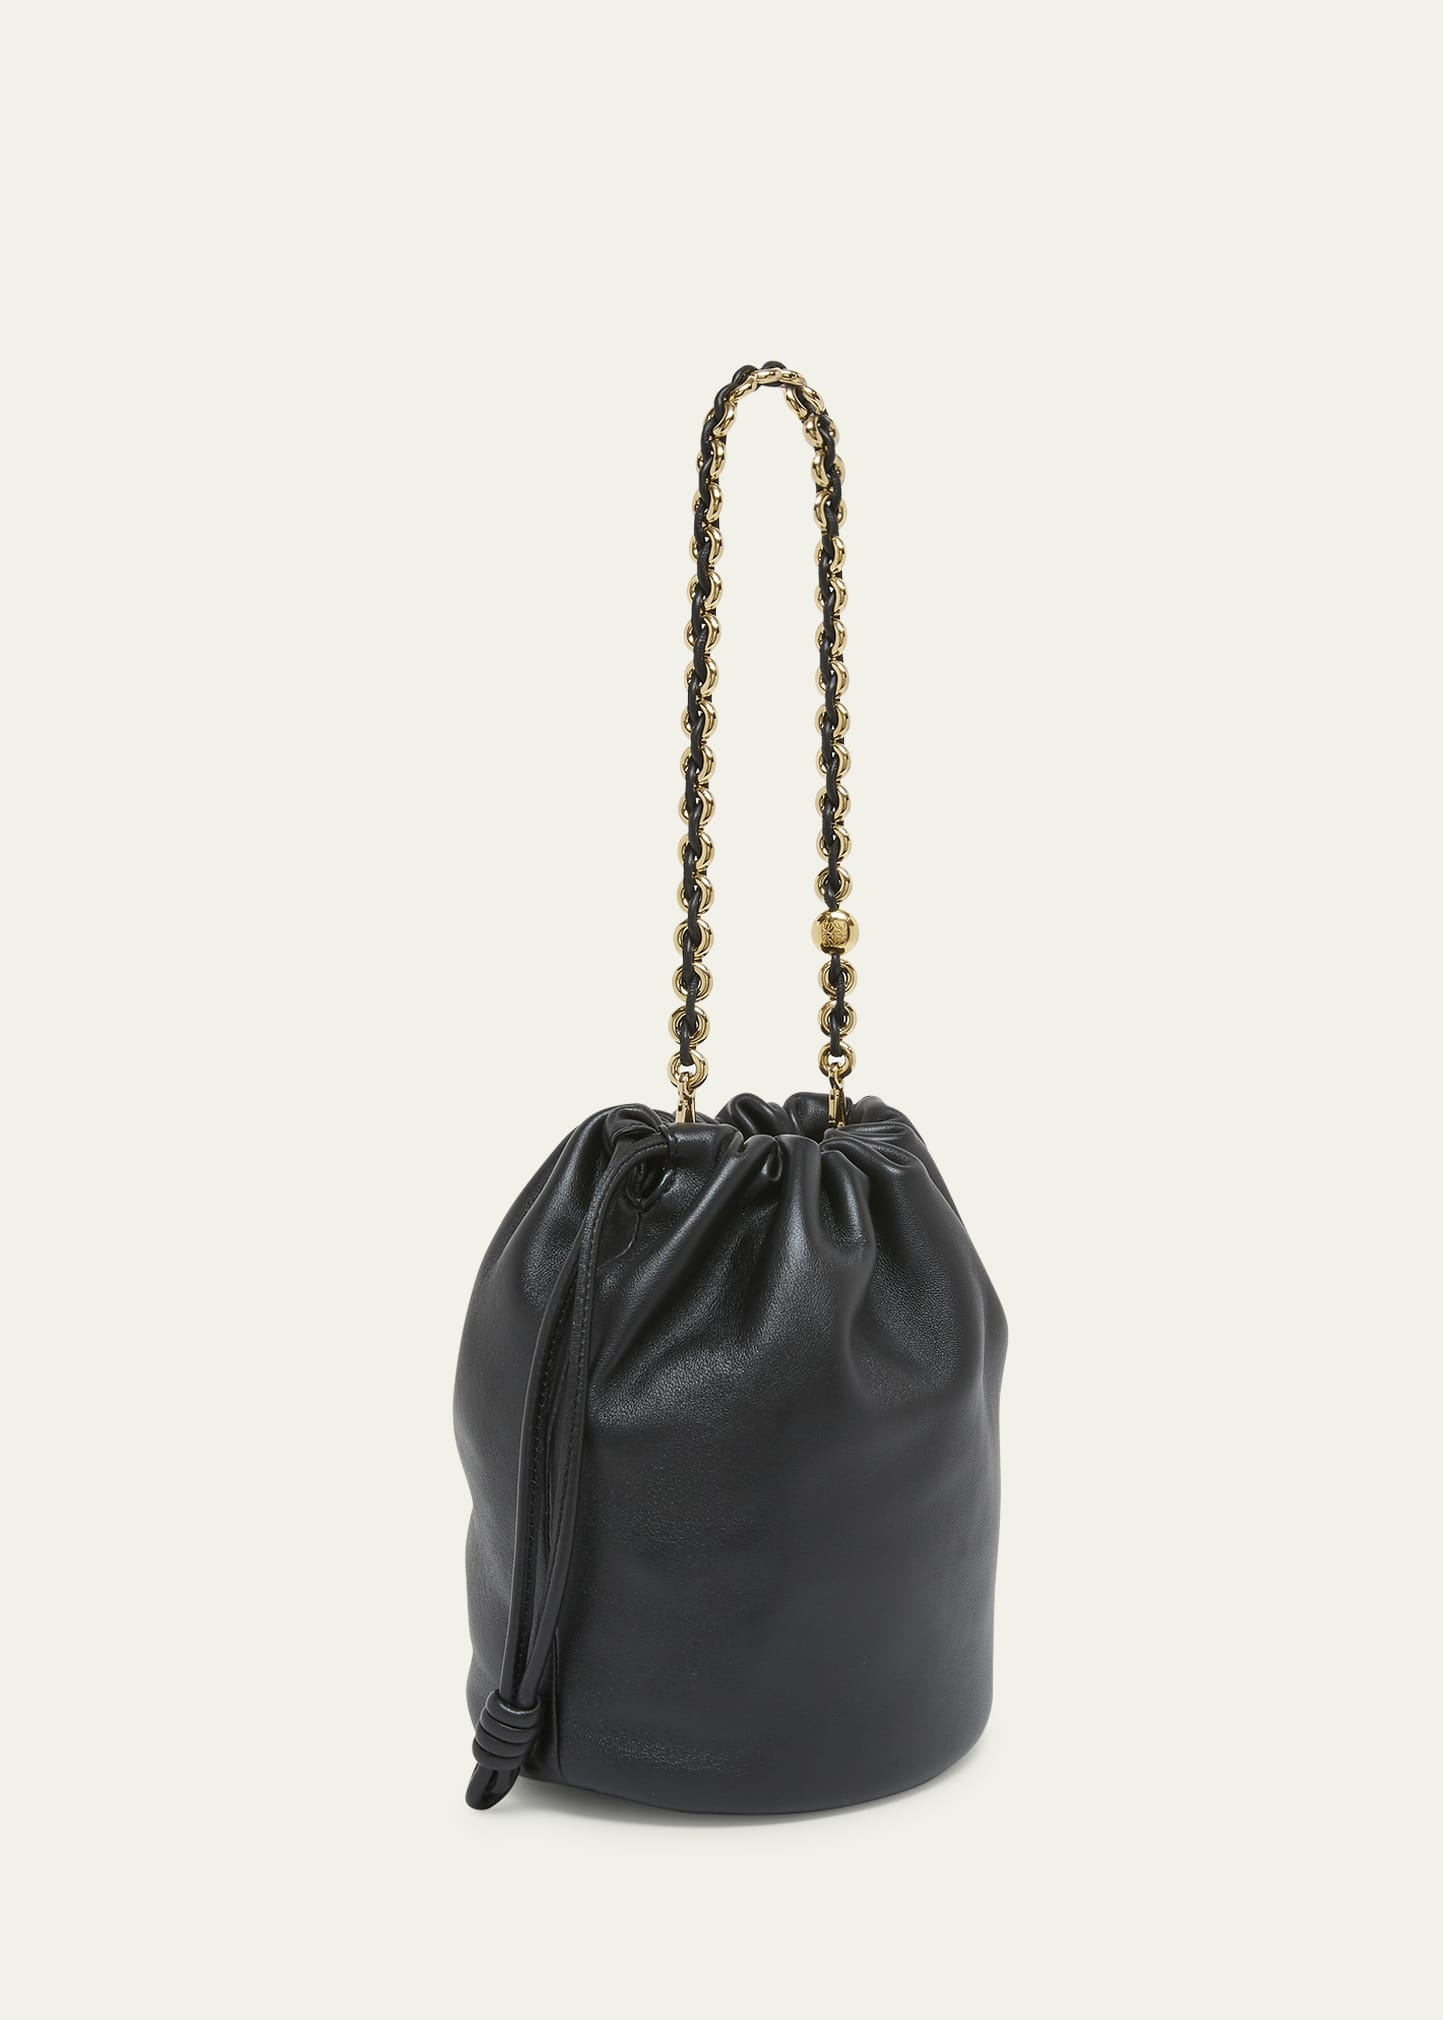 x Paula’s Ibiza Flamenco Bucket Bag in Napa Leather with Chain - 3